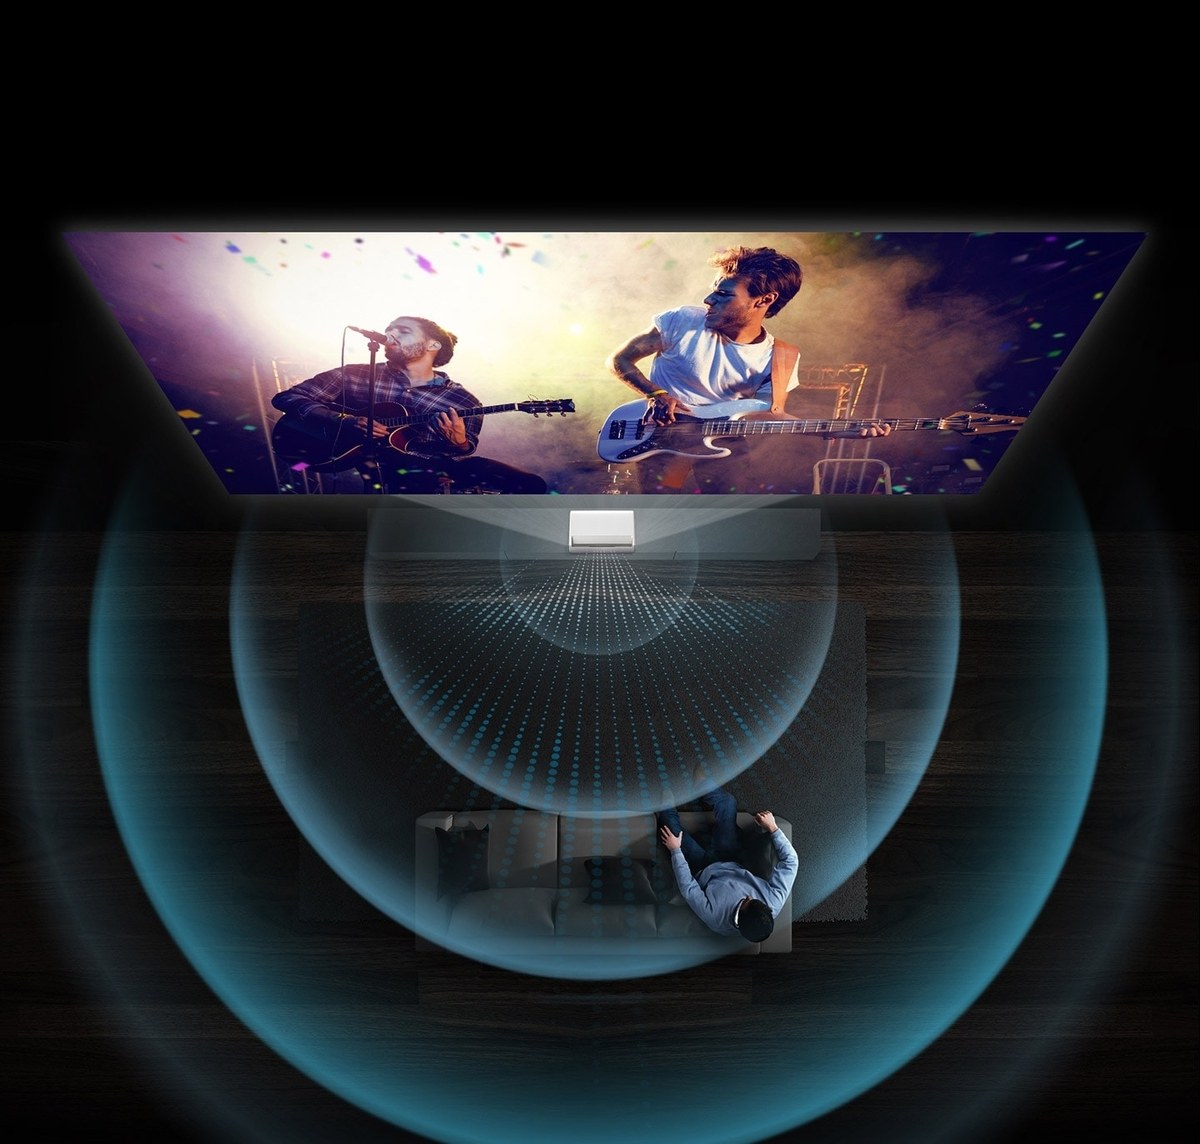 El concierto de la banda se muestra en el proyector de televisión Samsung The Premiere con altavoces de 4,2 canales y 40 vatios que proporcionan un sonido premium.